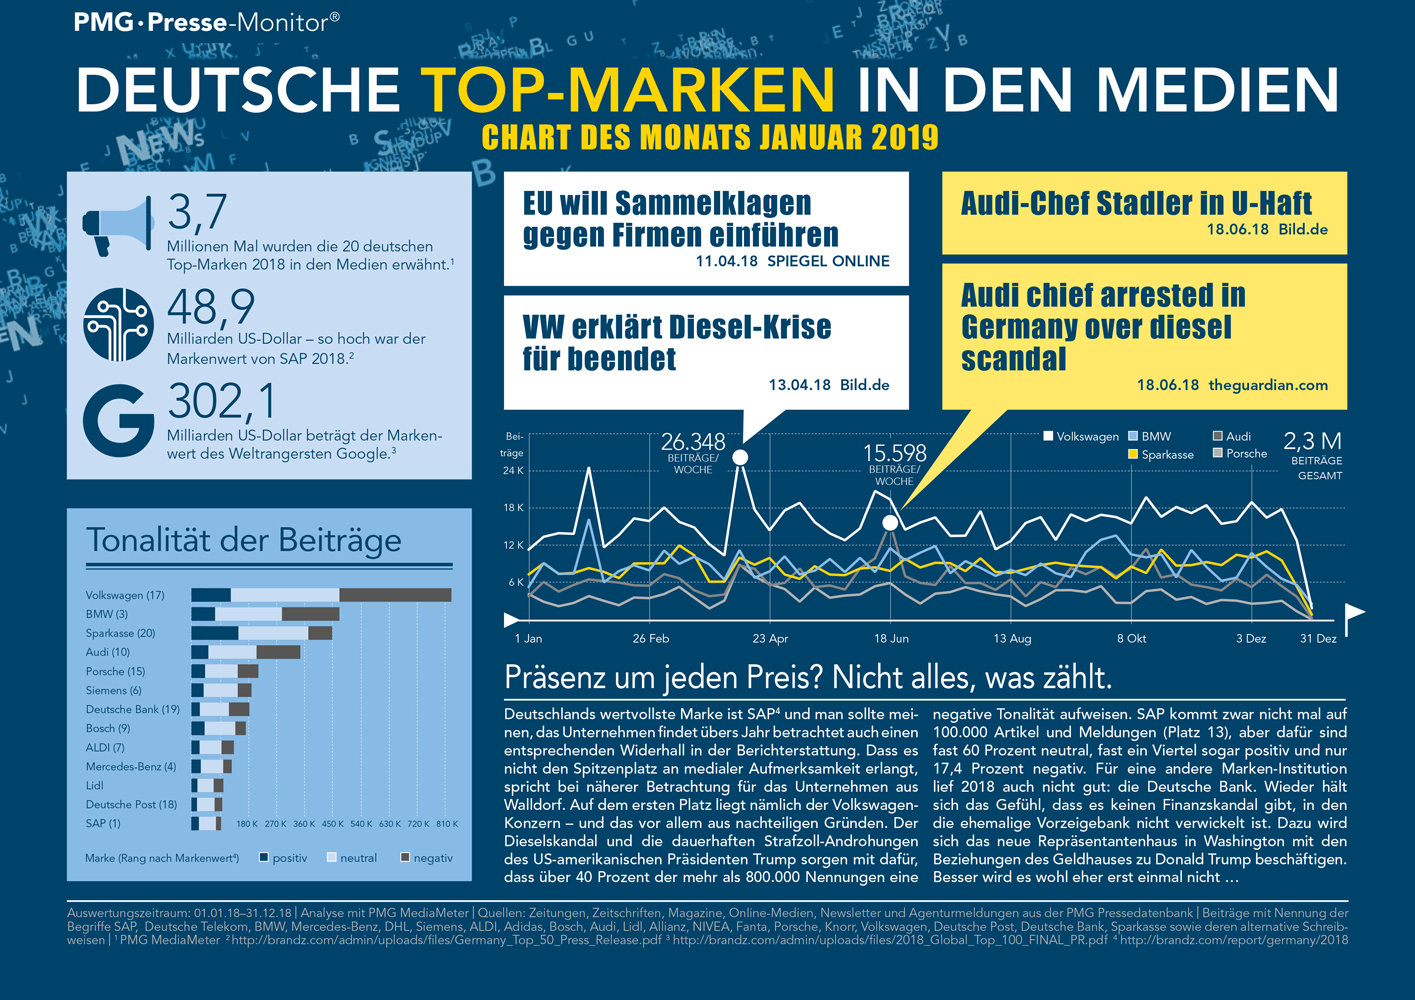 Deutsche Top-Marken in den Medien - PMG Presse-Monitor